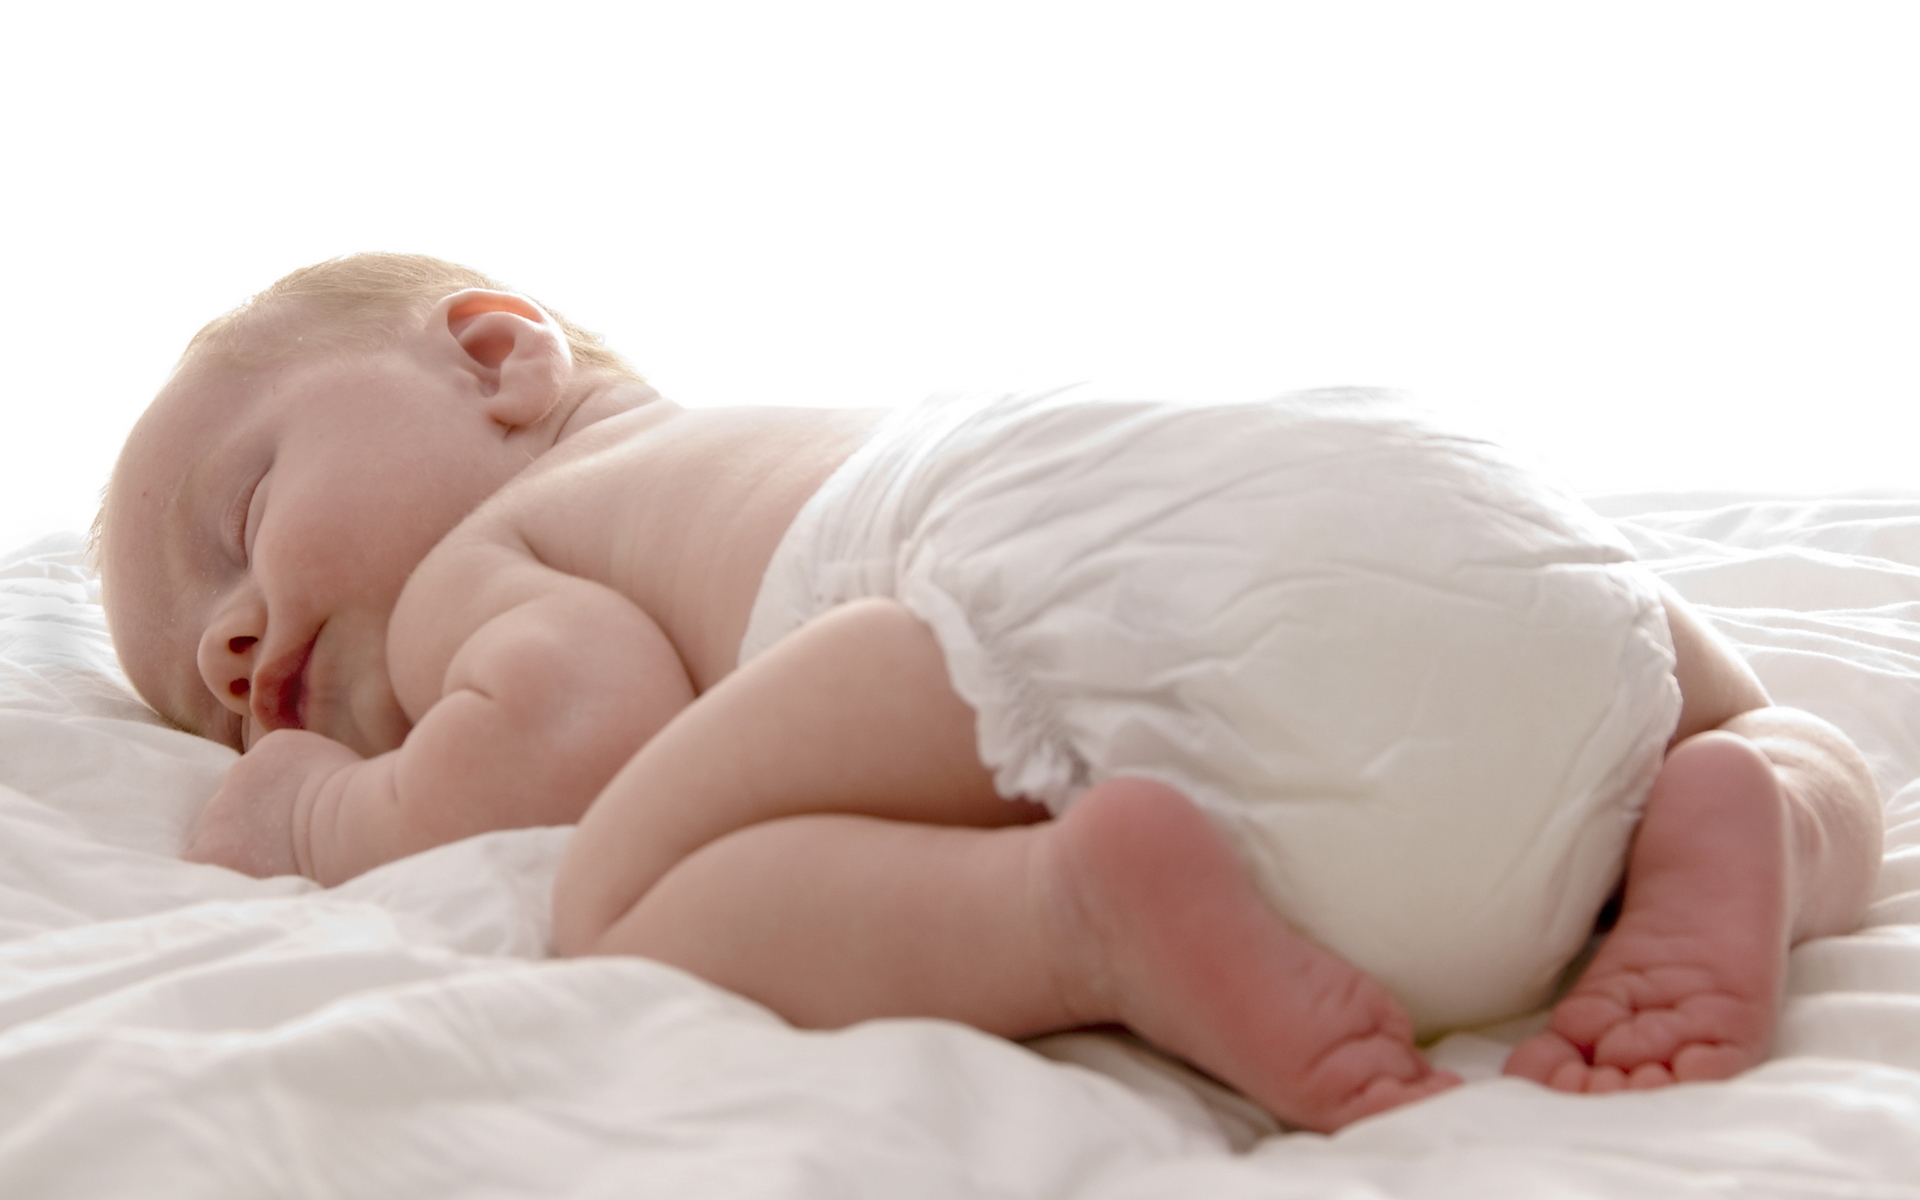 Best diaper creams for a newborn in 2020